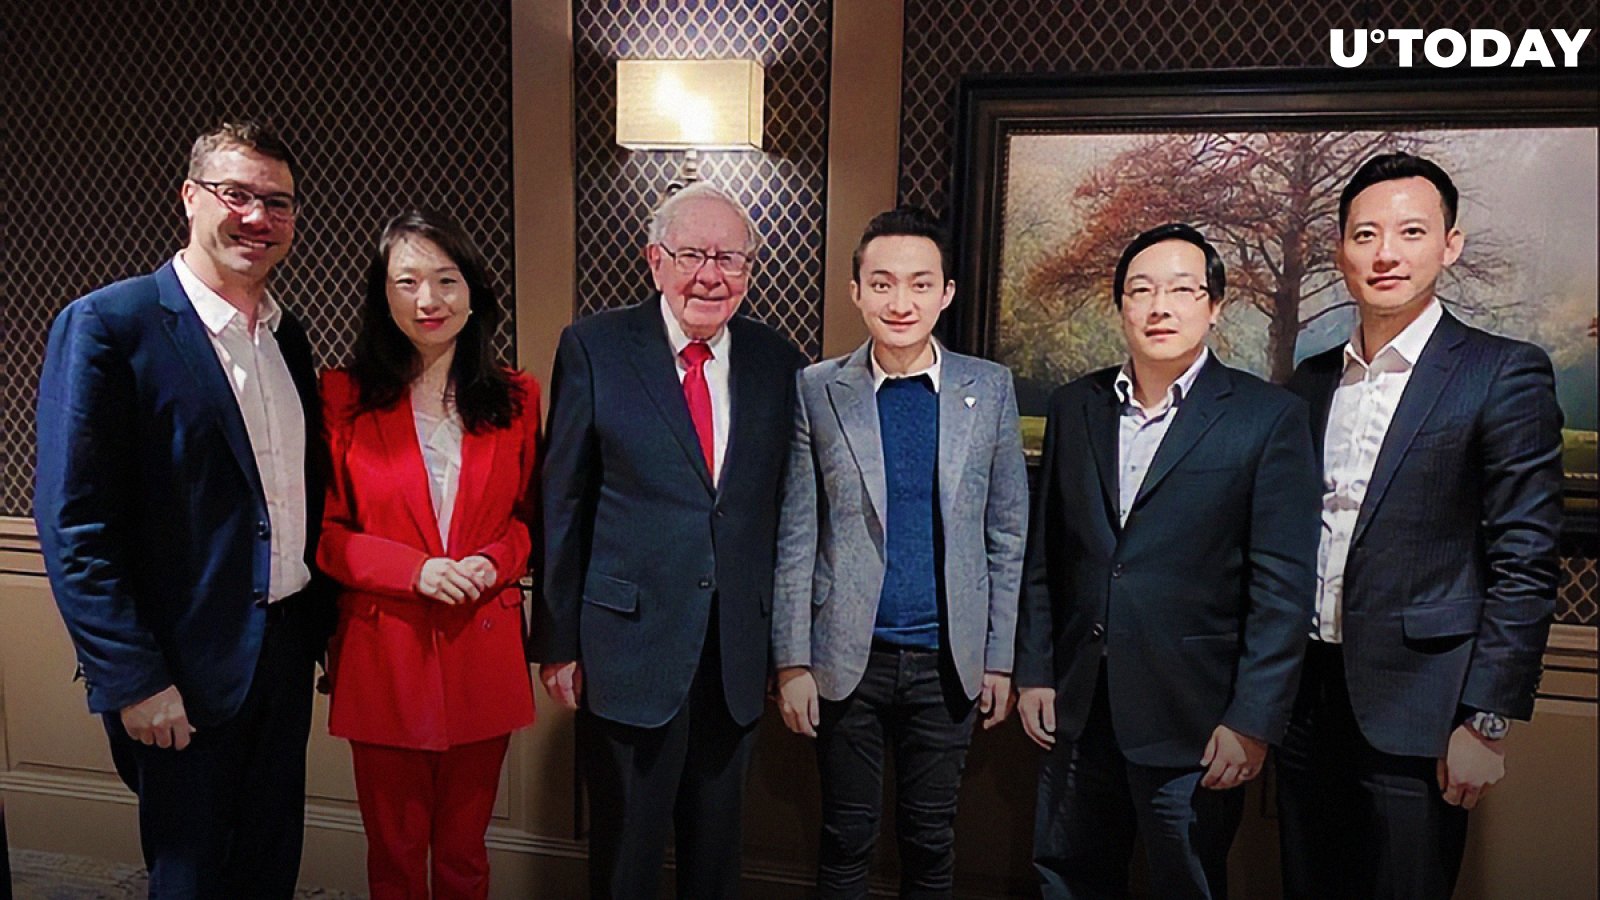 Tron CEO Justin Sun Finally Meets Warren Buffett – As It Happened